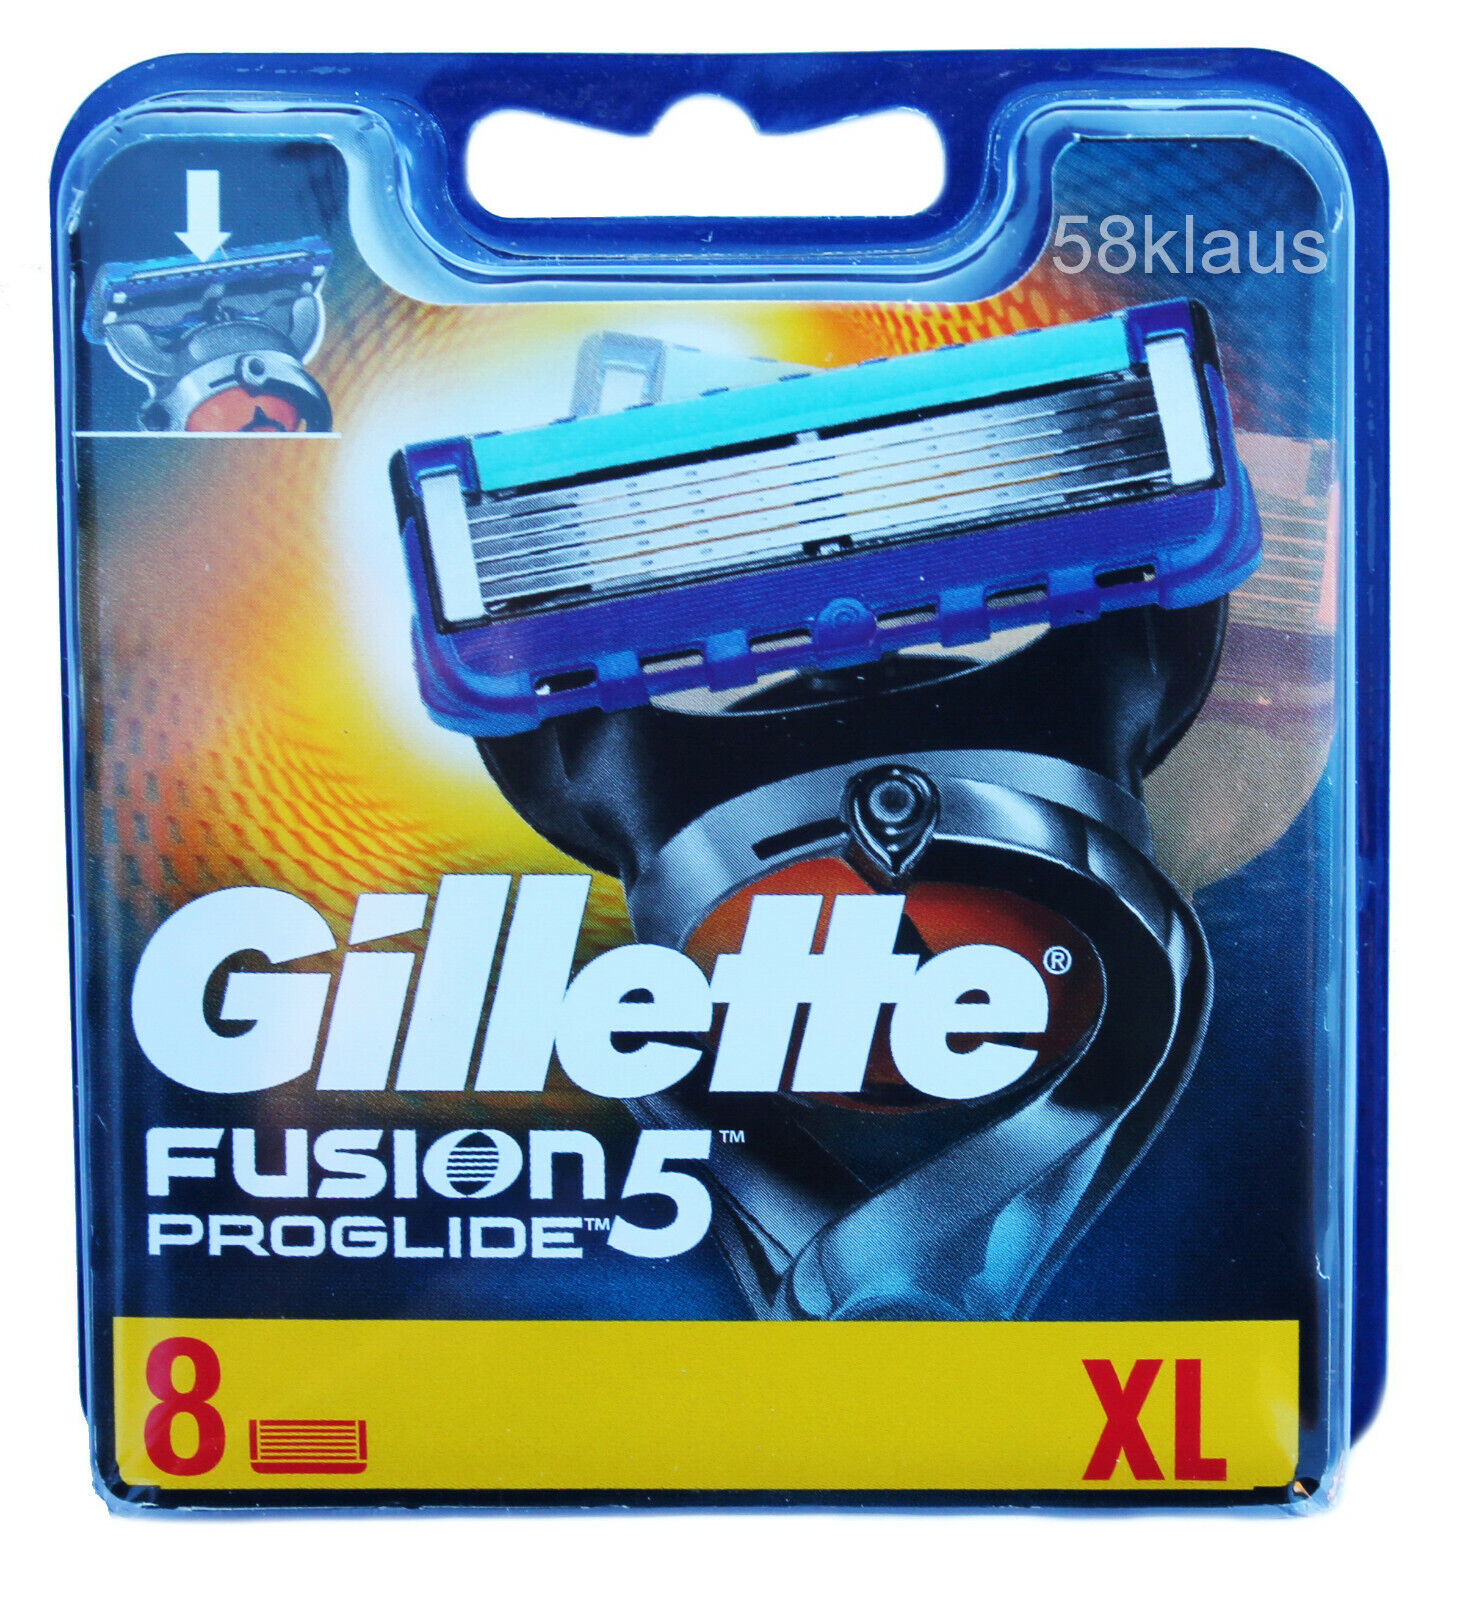 Gillette Fusion 5 ProGlide Power Sortiment Rasierklingen 4 6 8 12 16 24 32 36 40